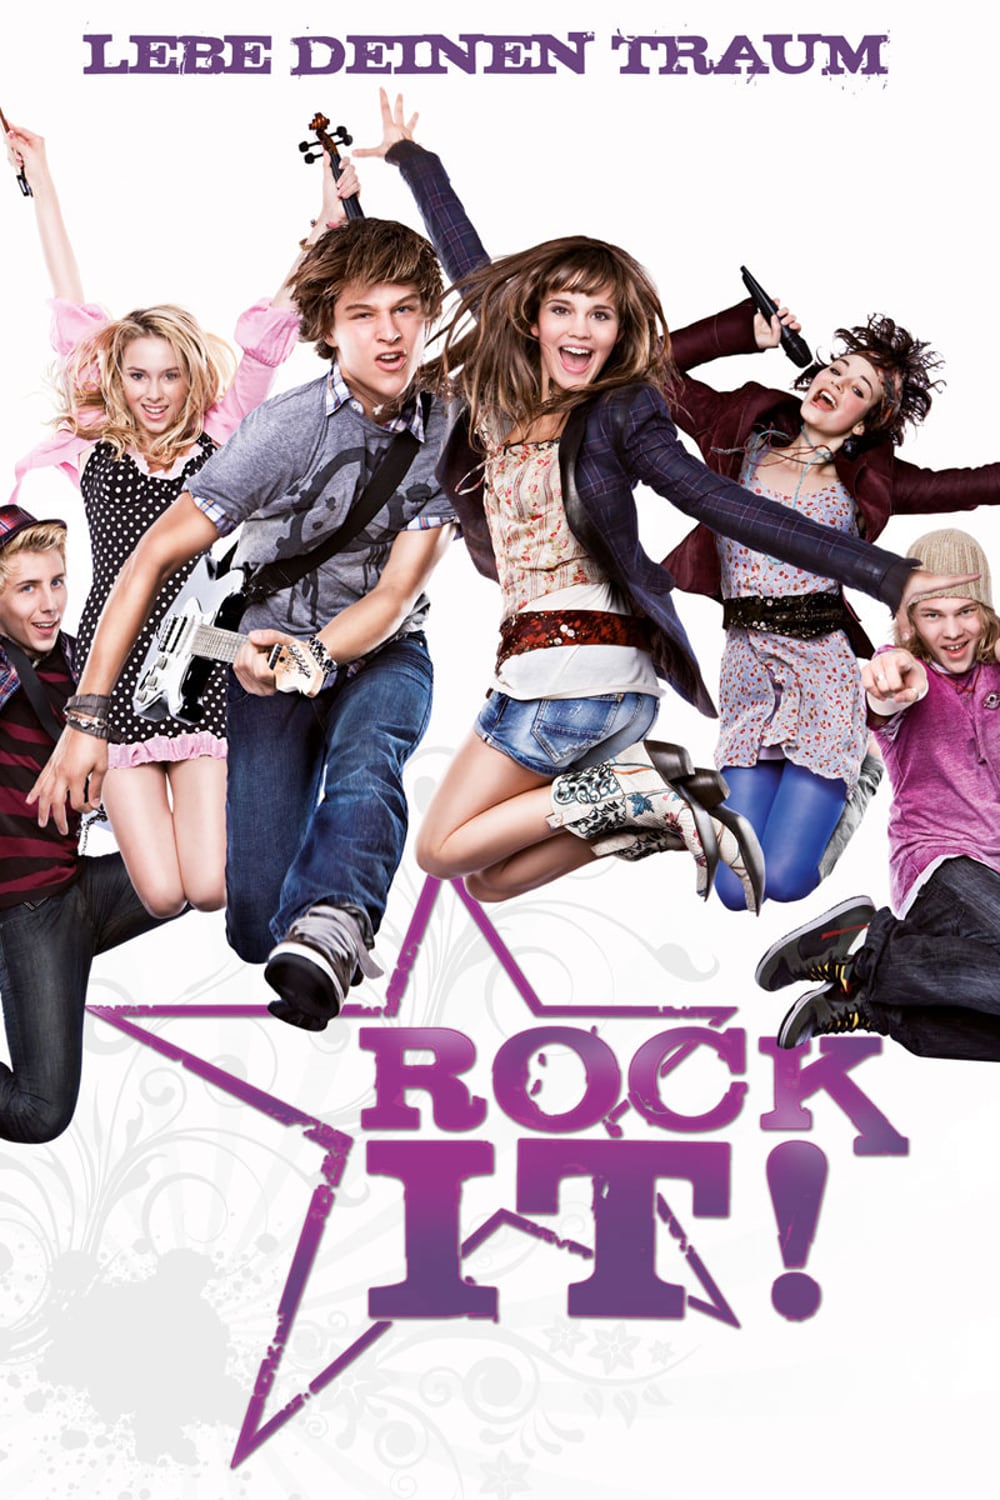 Plakat von "Rock It!"